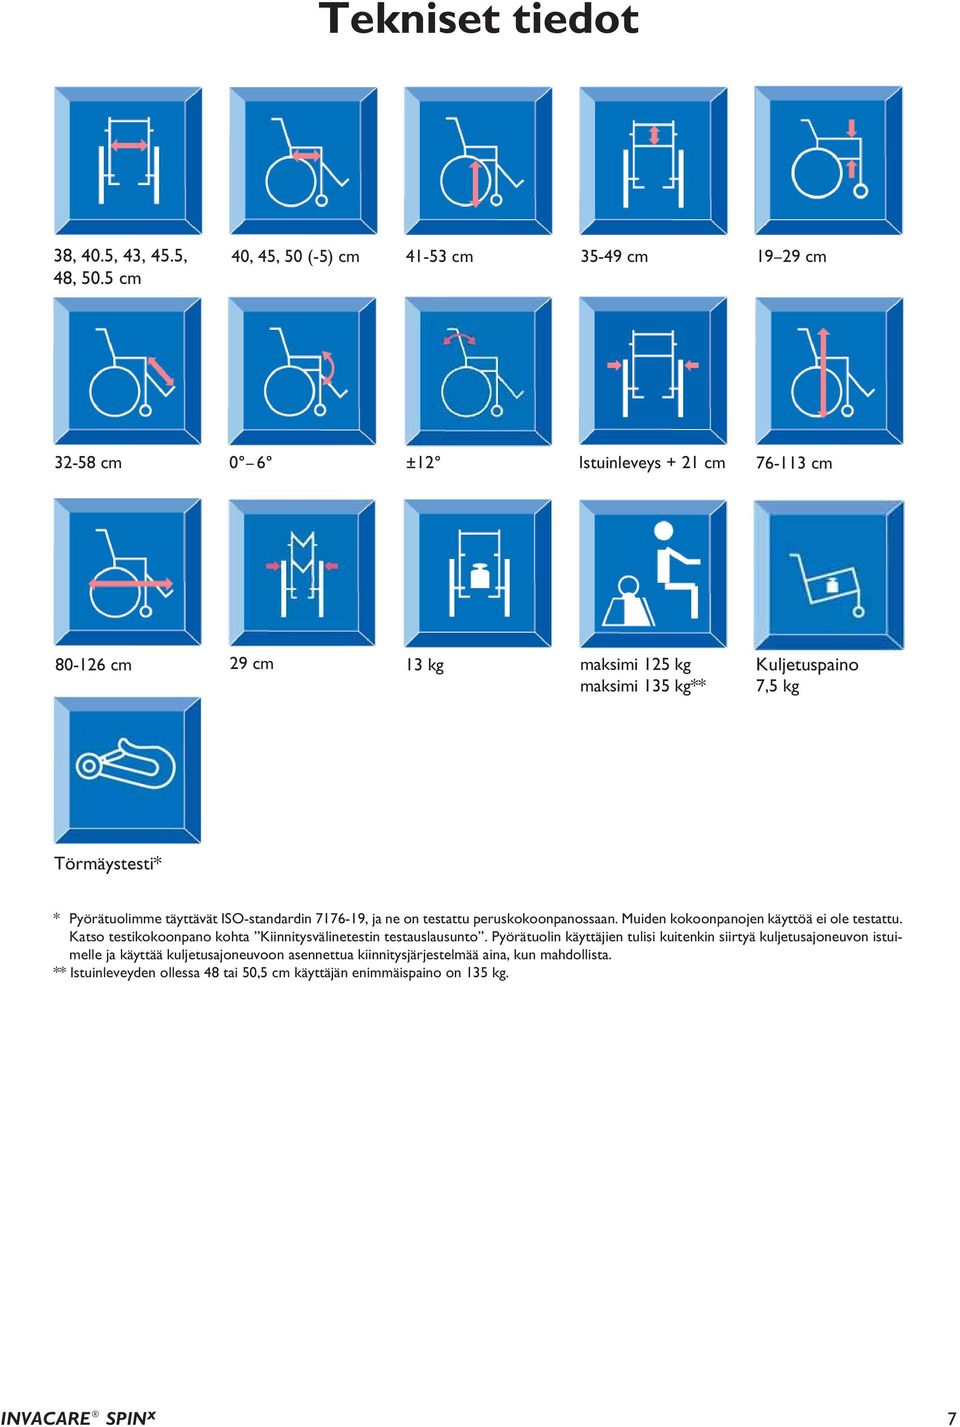 kg Törmäystesti* * Pyörätuolimme täyttävät ISO-standardin 7176-19, ja ne on testattu peruskokoonpanossaan. Muiden kokoonpanojen käyttöä ei ole testattu.